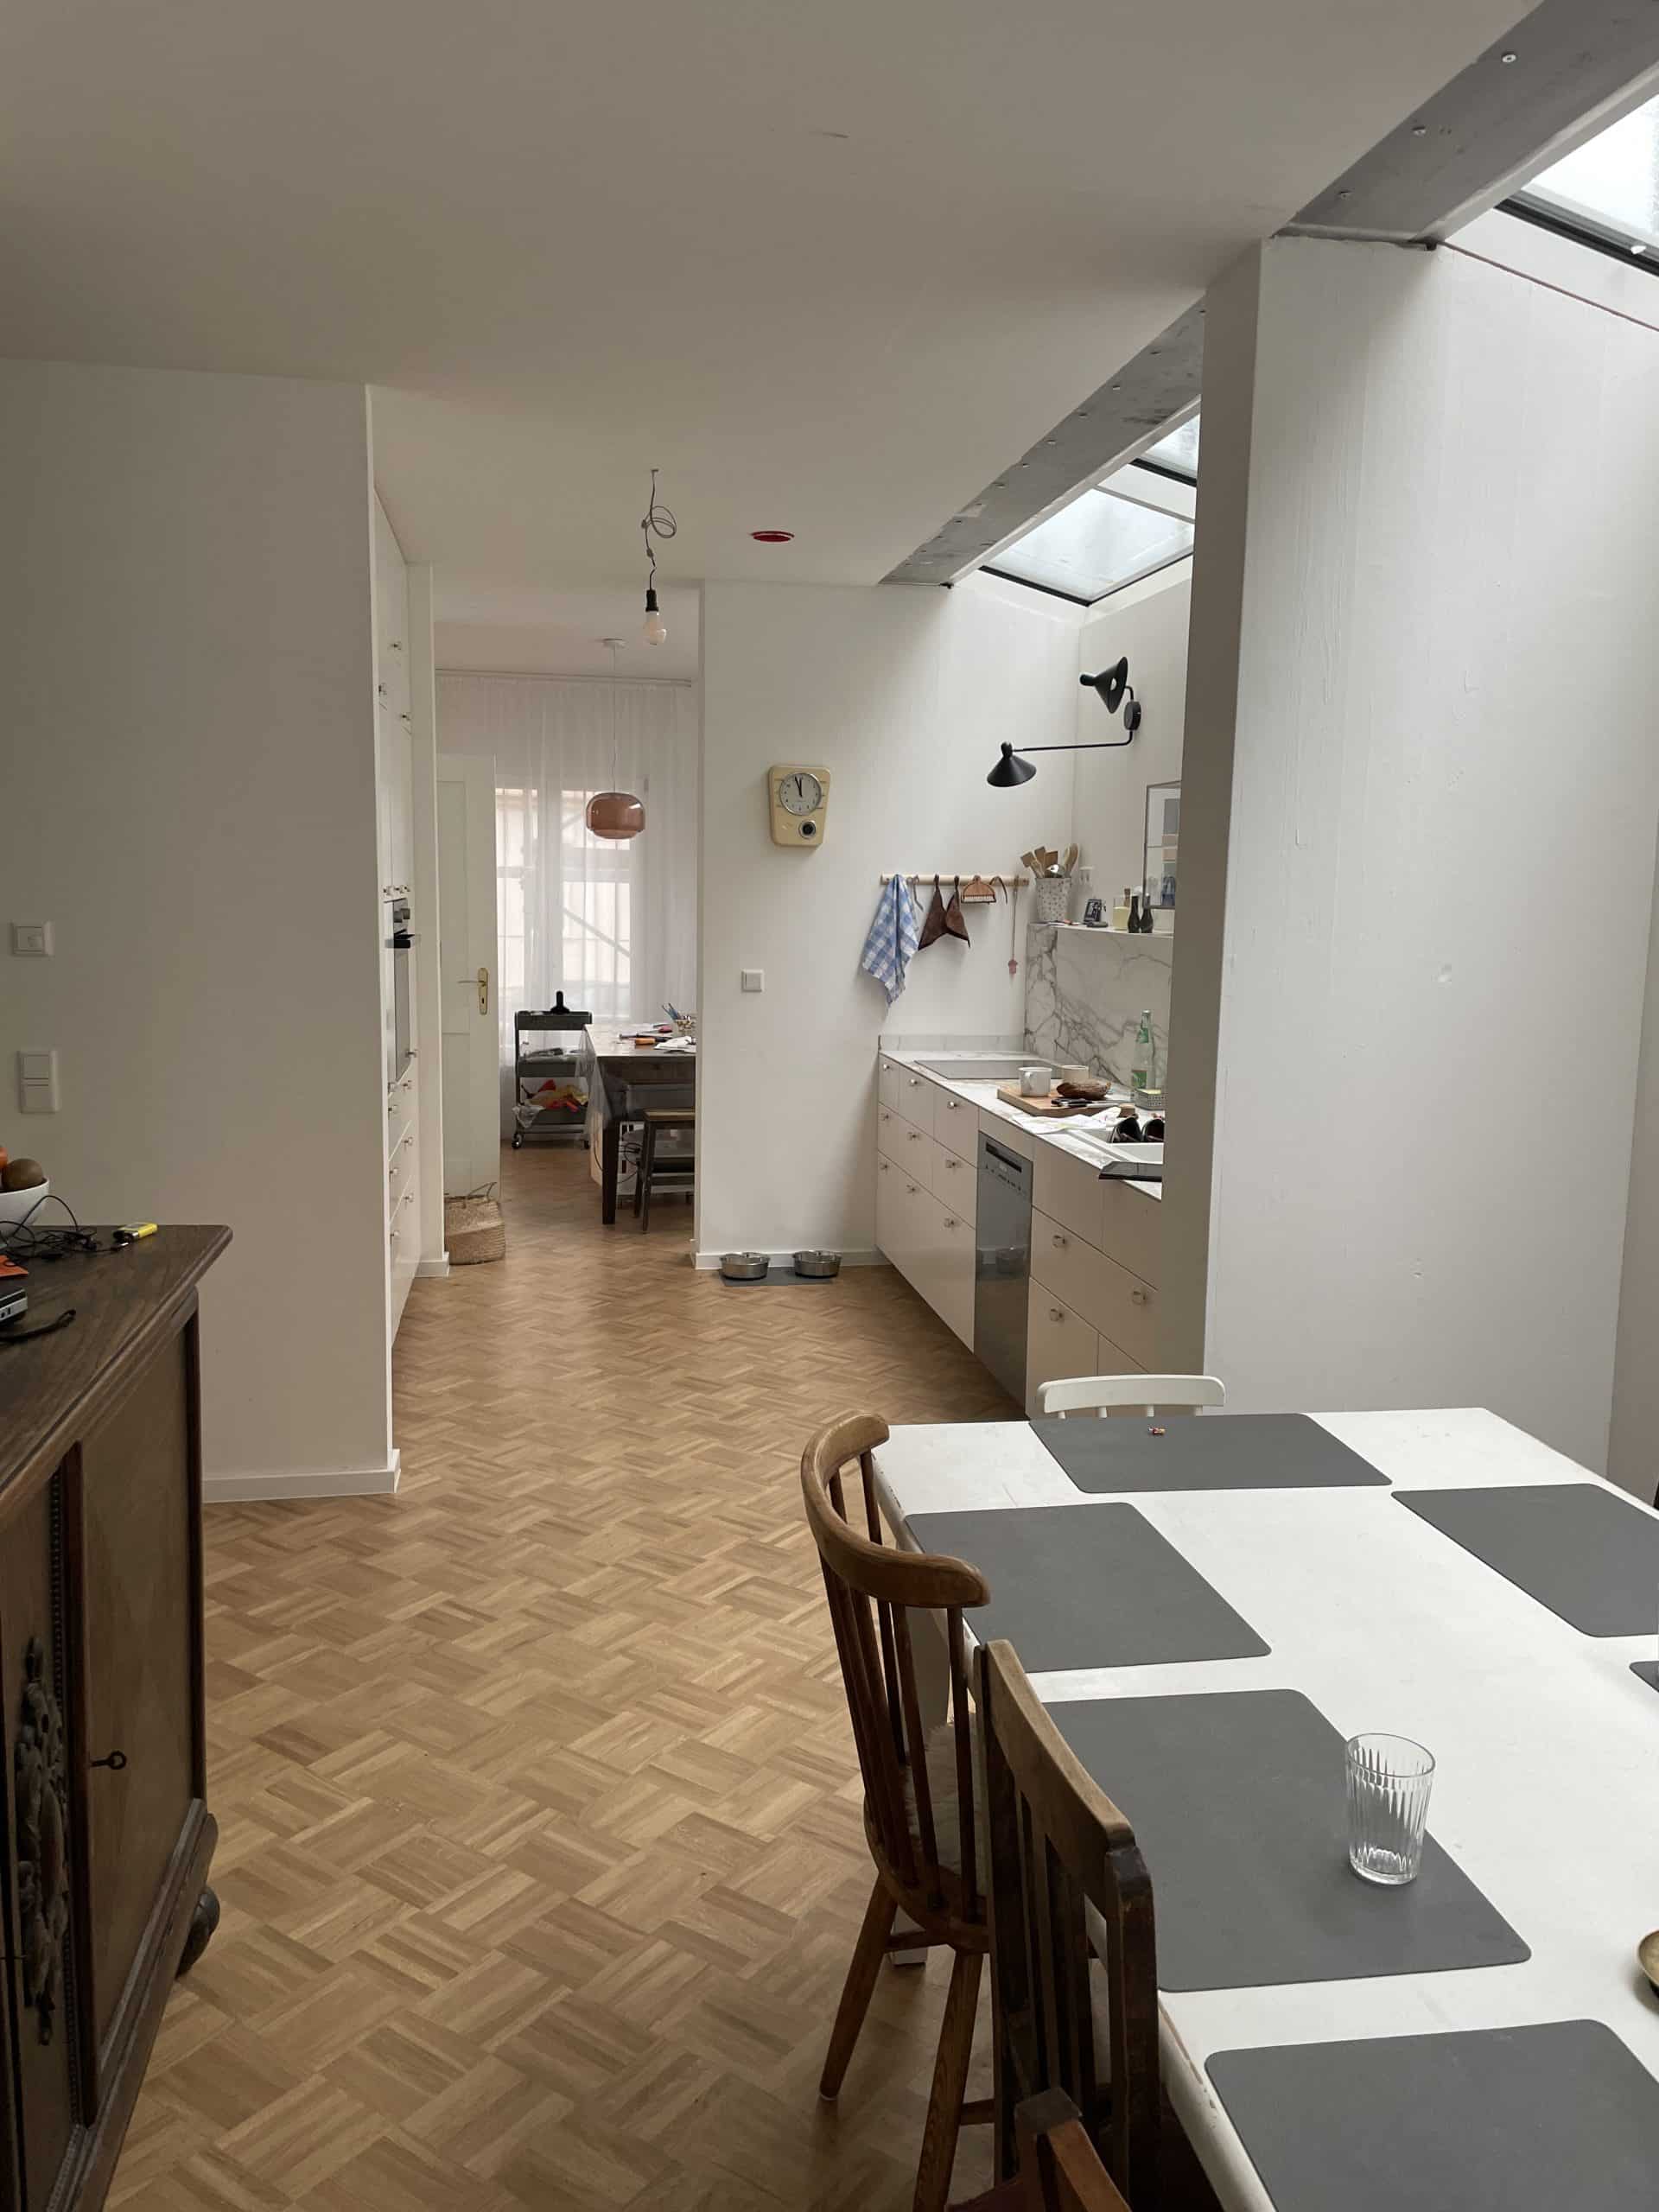 Vordergrund: Essplatz mit offenem Durchgang zur Küche mit einer Küchenzeile rechts, Hintergrund: Arbeitszimmer; Boden: Parkett